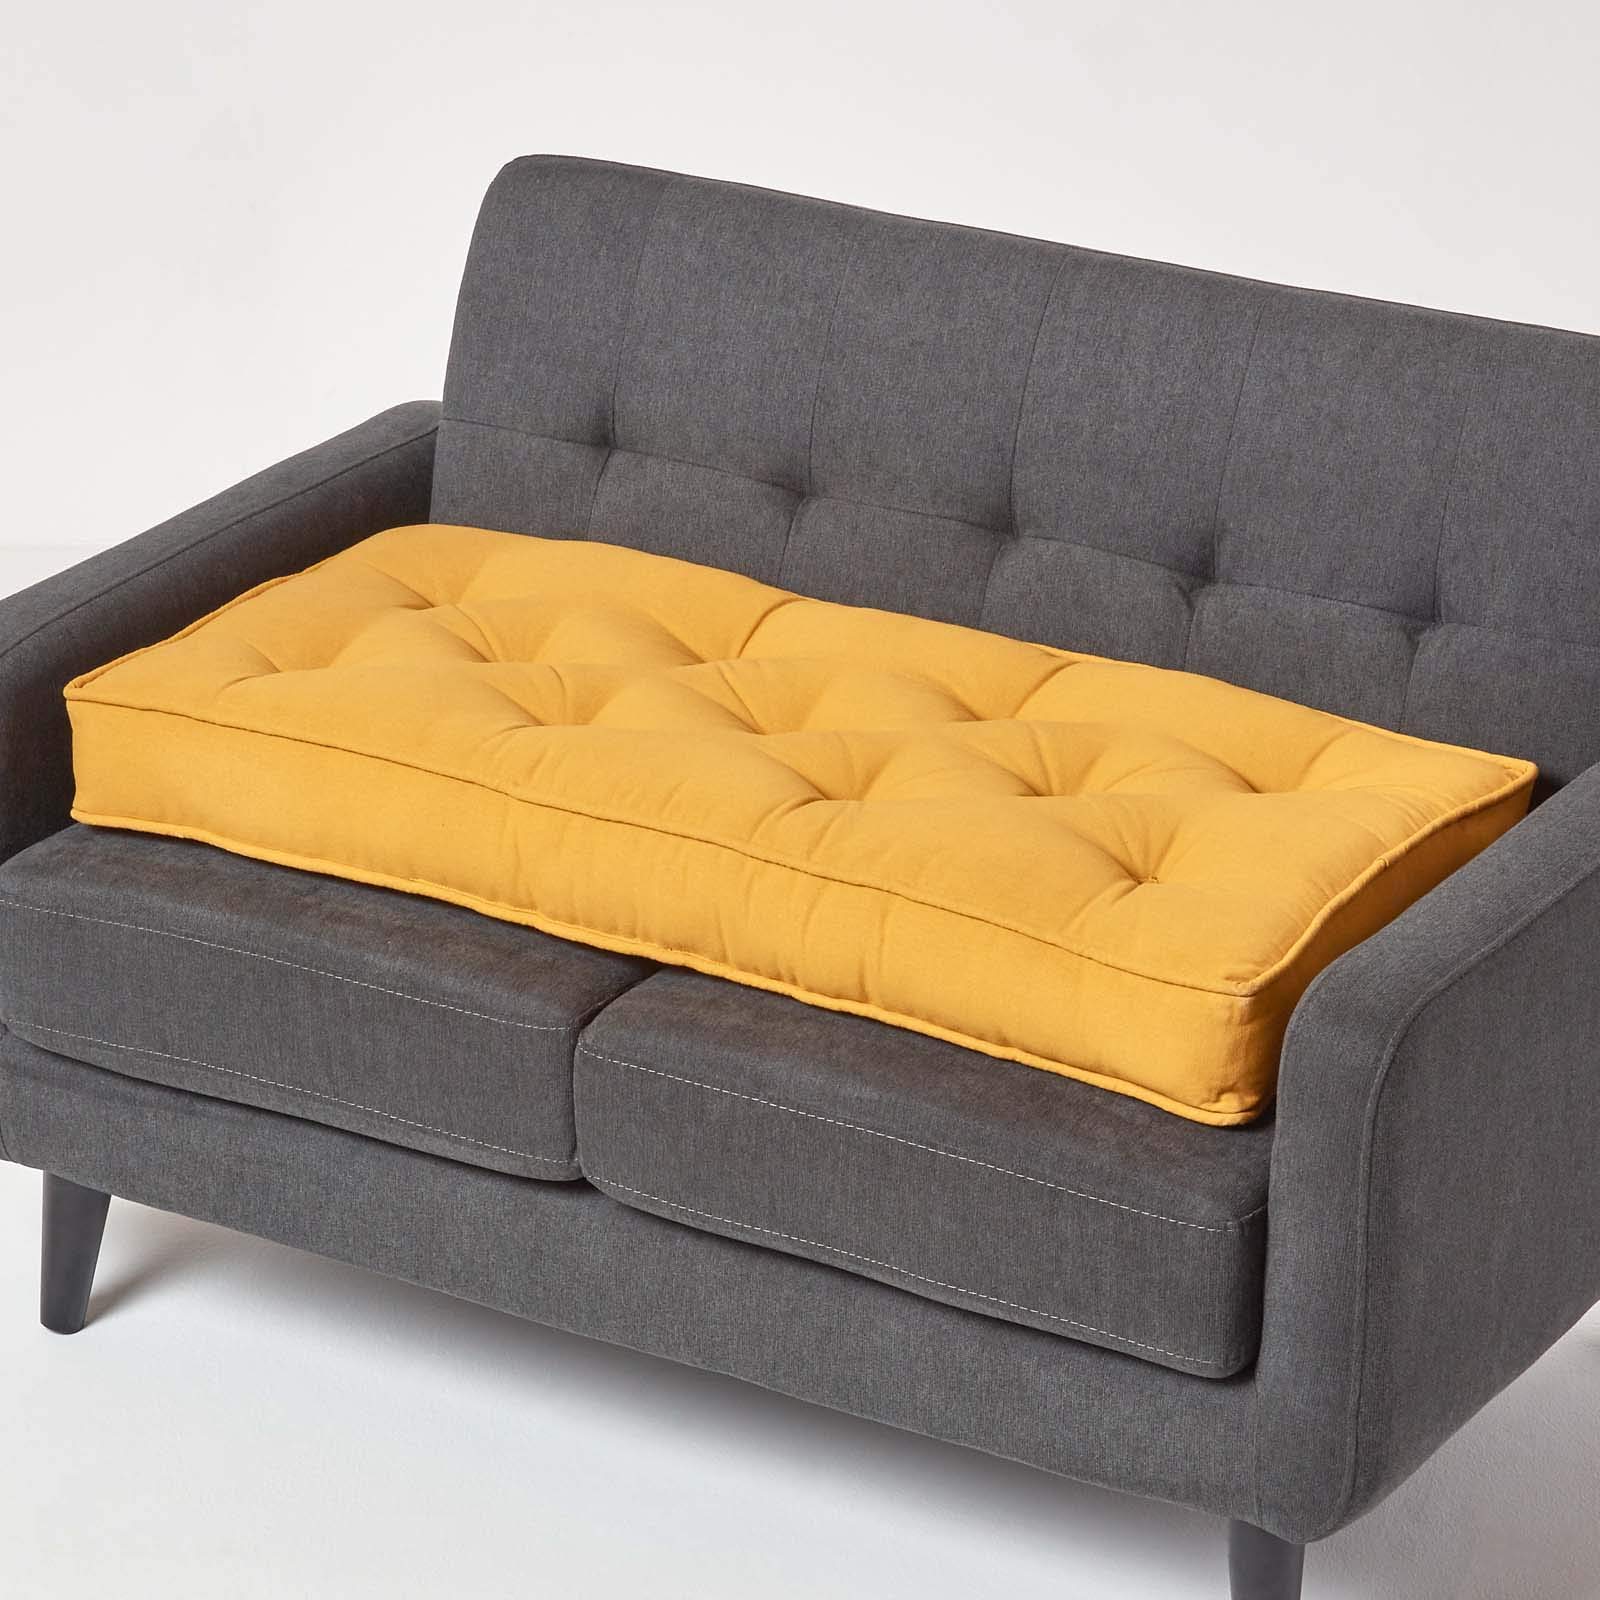 Homescapes Langes Sitzkissen senfgelb 100x48 cm, Dicke Sofa-Auflage gepolstert, Sitzauflage Sofa mit Baumwollbezug